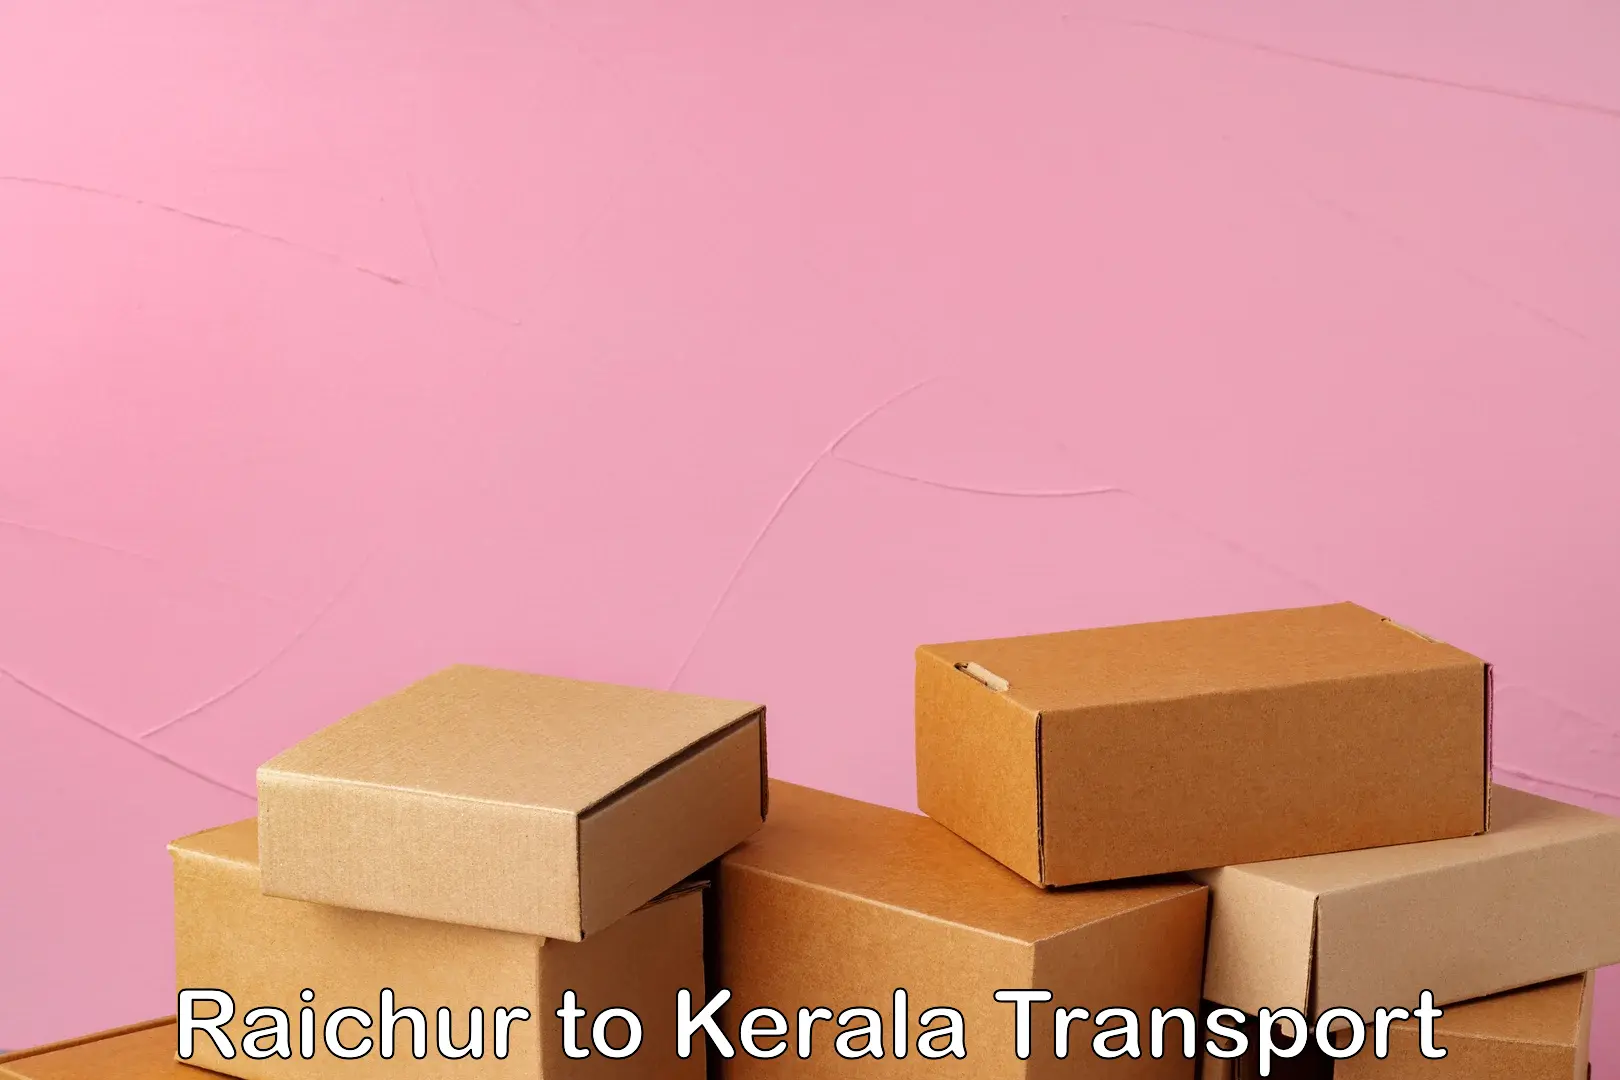 Furniture transport service Raichur to Kuttikol